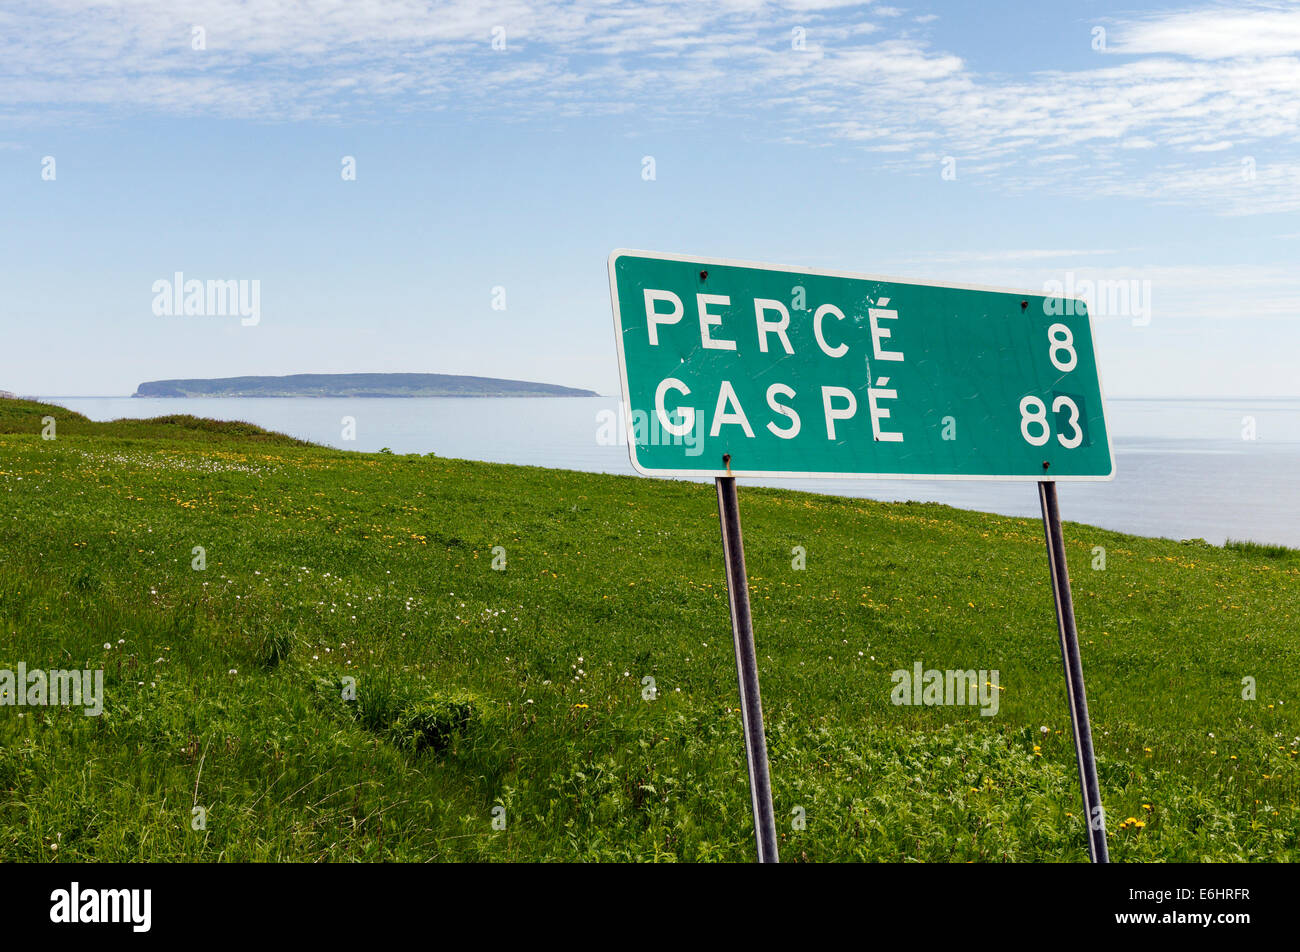 Un panneau routier indiquant Percé et Gaspé en Gaspésie, Québec, Canada, avec au-delà de l'île Bonaventure Banque D'Images